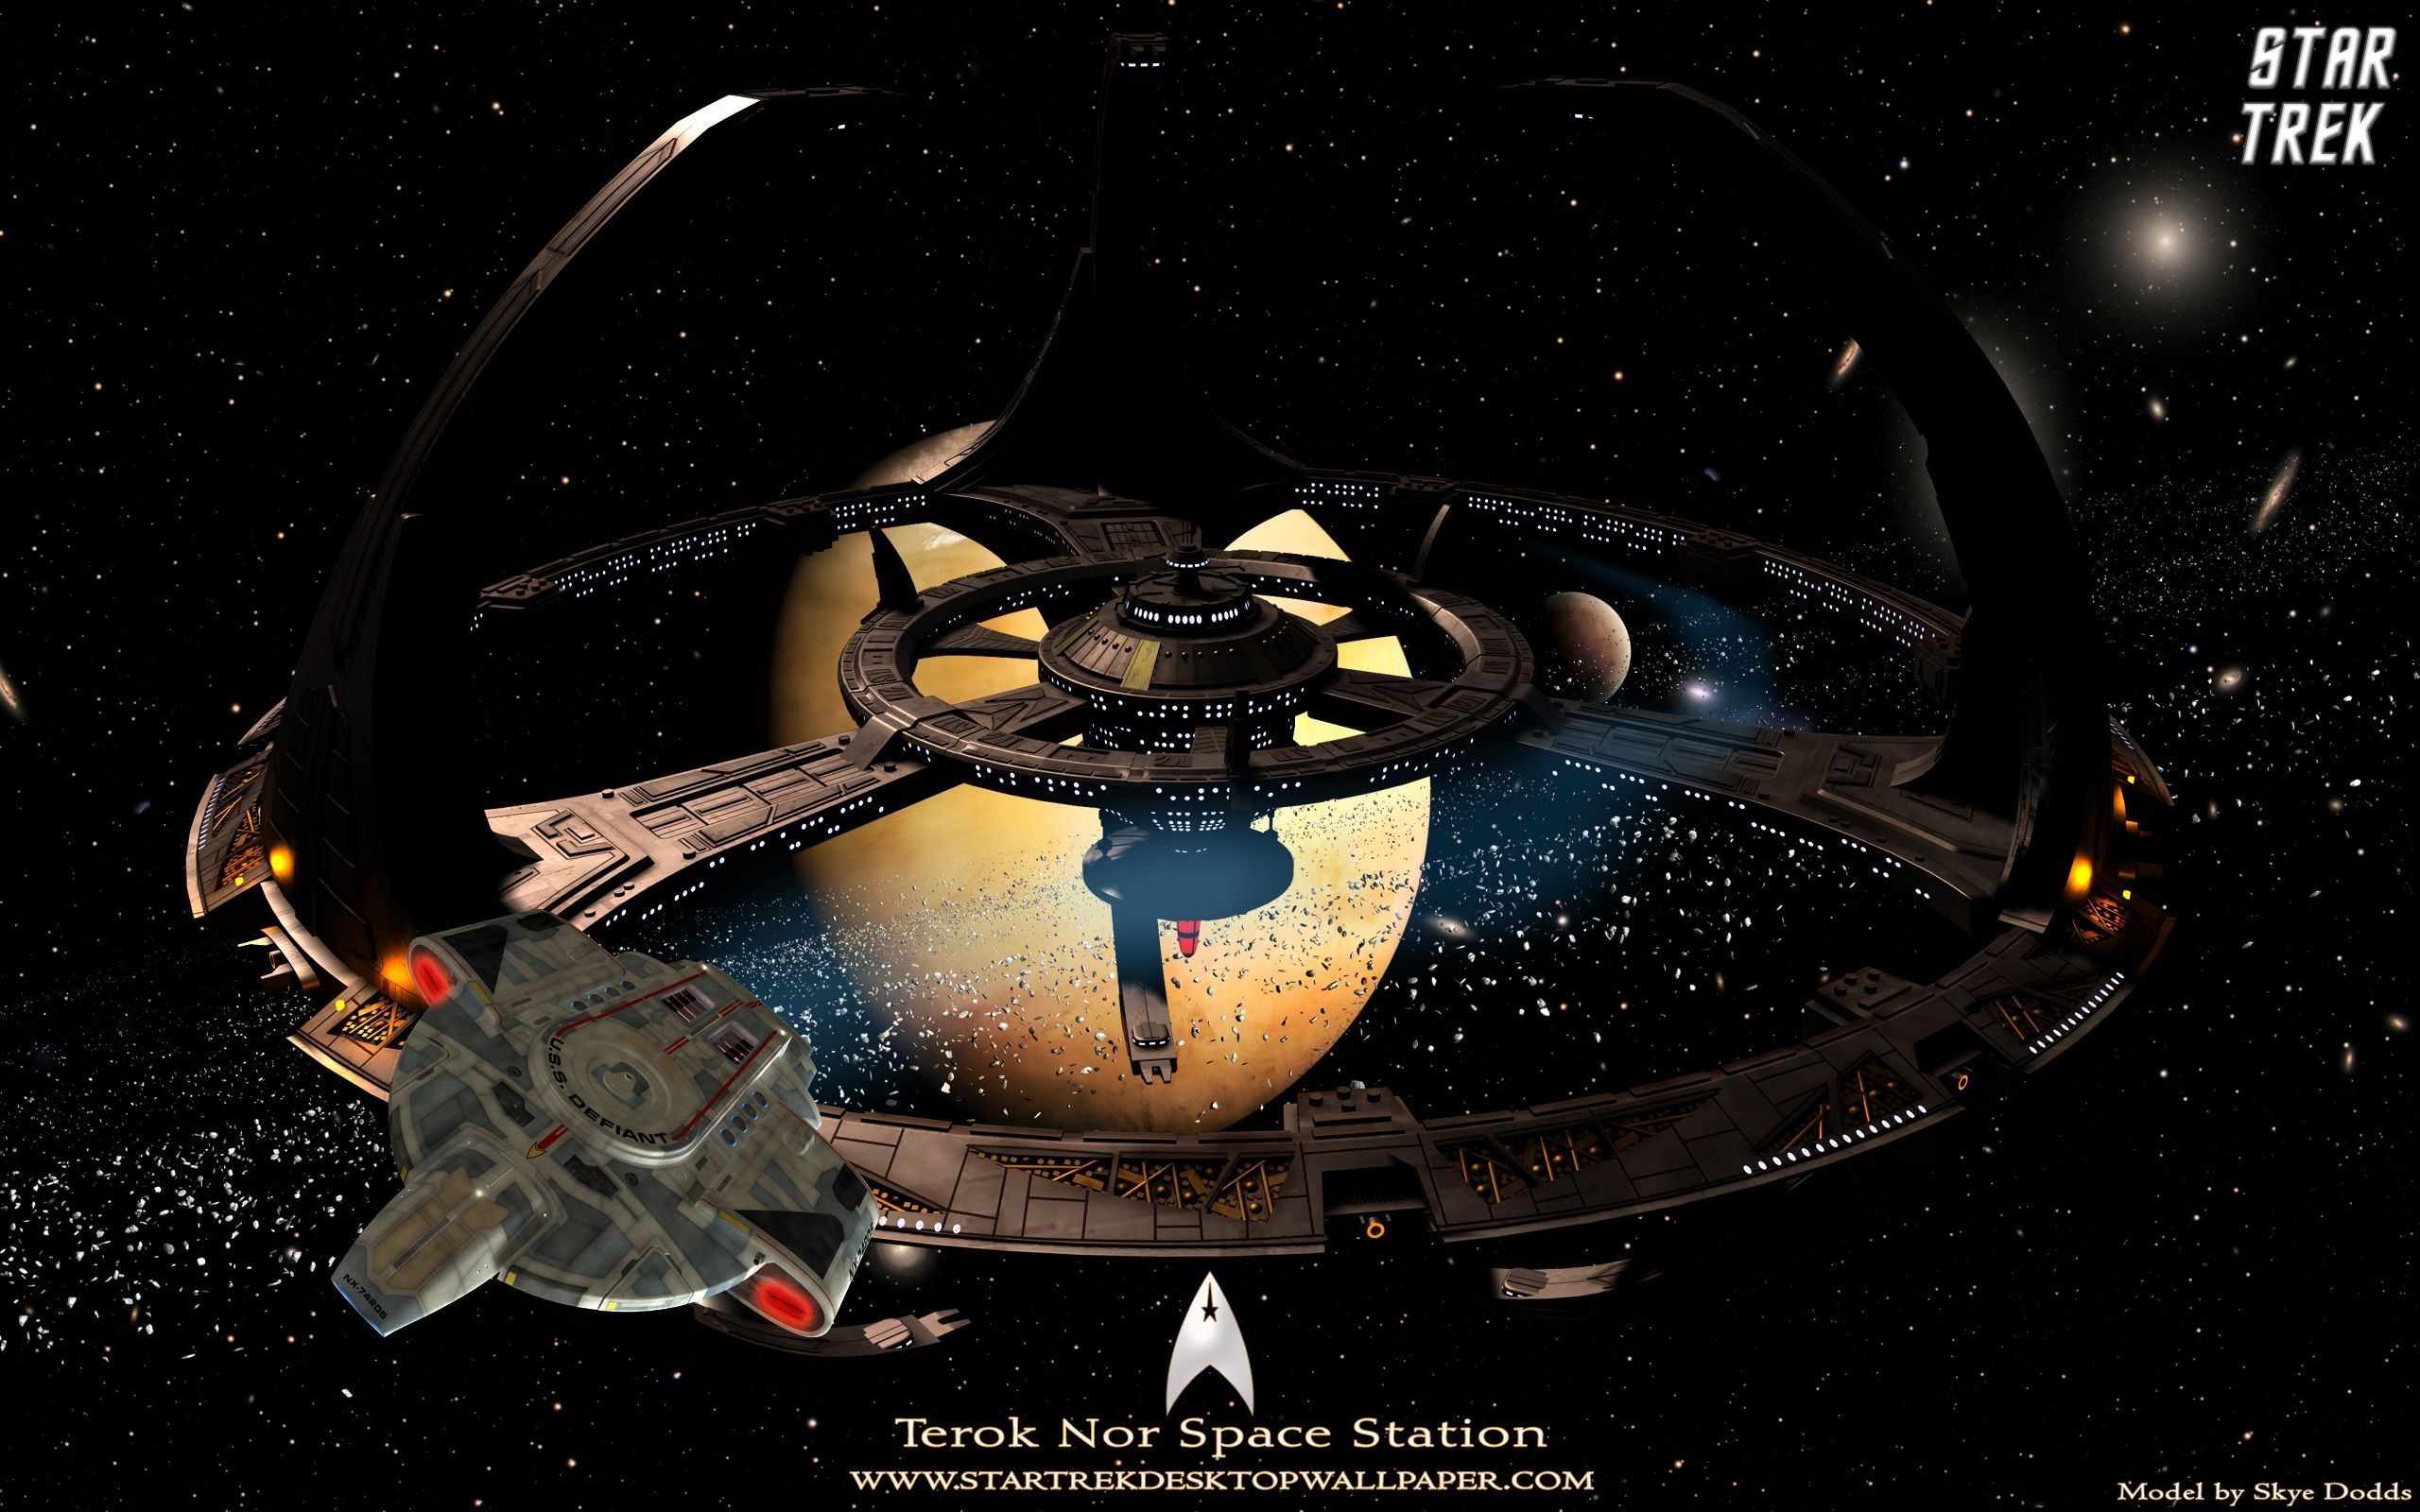 Star Trek Terok Nor Space Station Star Trek computer desktop wallpaper, picture, image. Star trek, Star trek ds Star trek ships